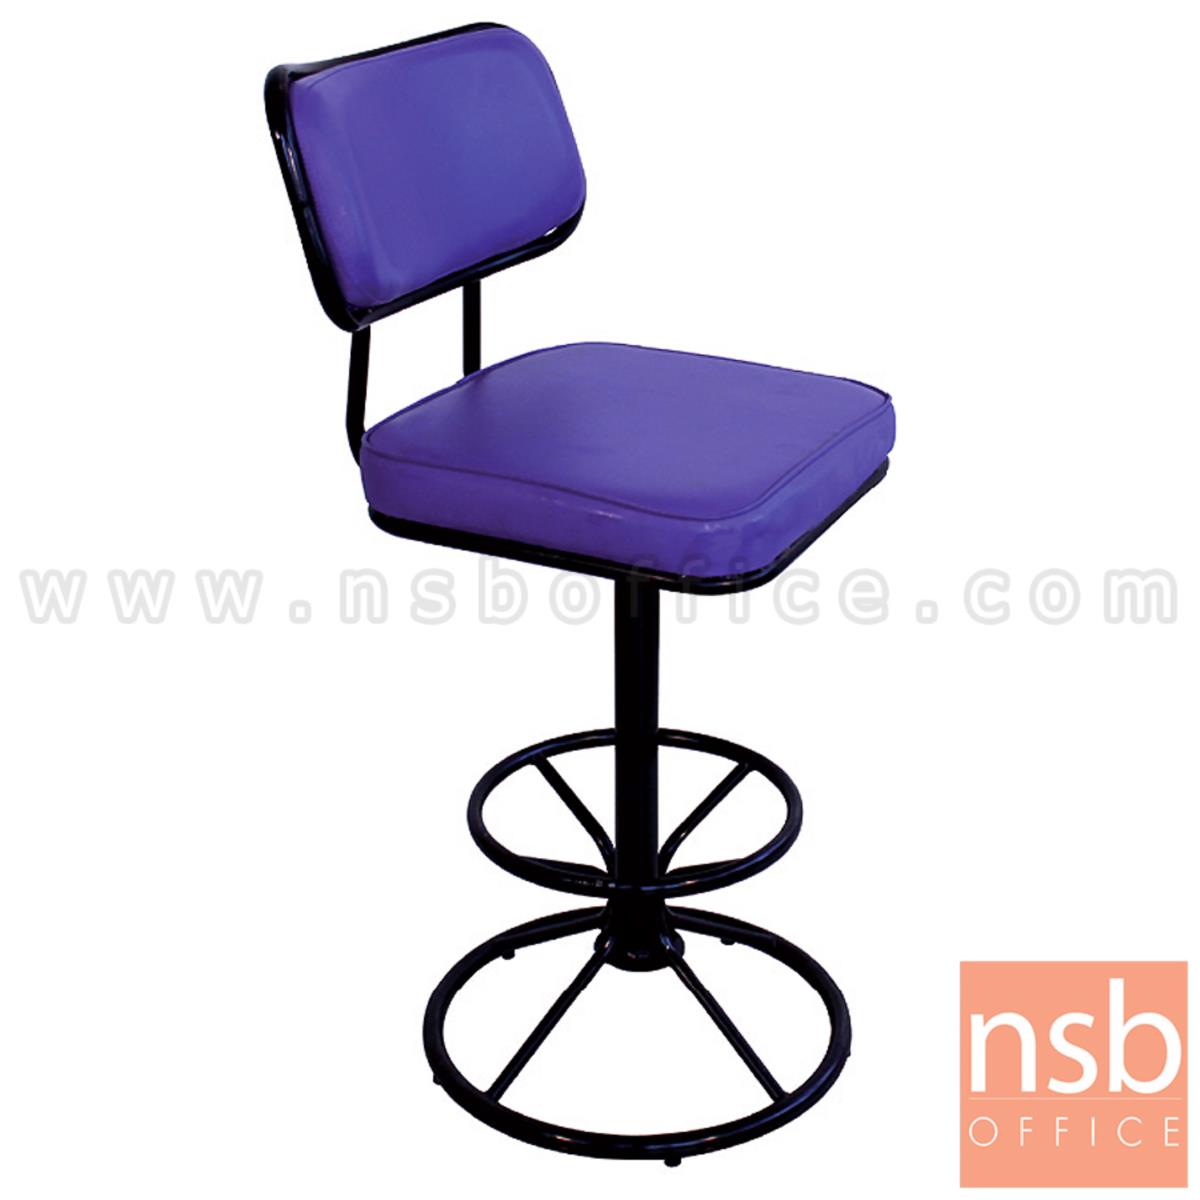 B09A217:เก้าอี้บาร์ที่นั่งเหลี่ยมมีพิง ขาบาร์สูง  รุ่น Nottingham (นอตทิงแฮม) ขนาด 76H cm. โครง-ขาเหล็ก 